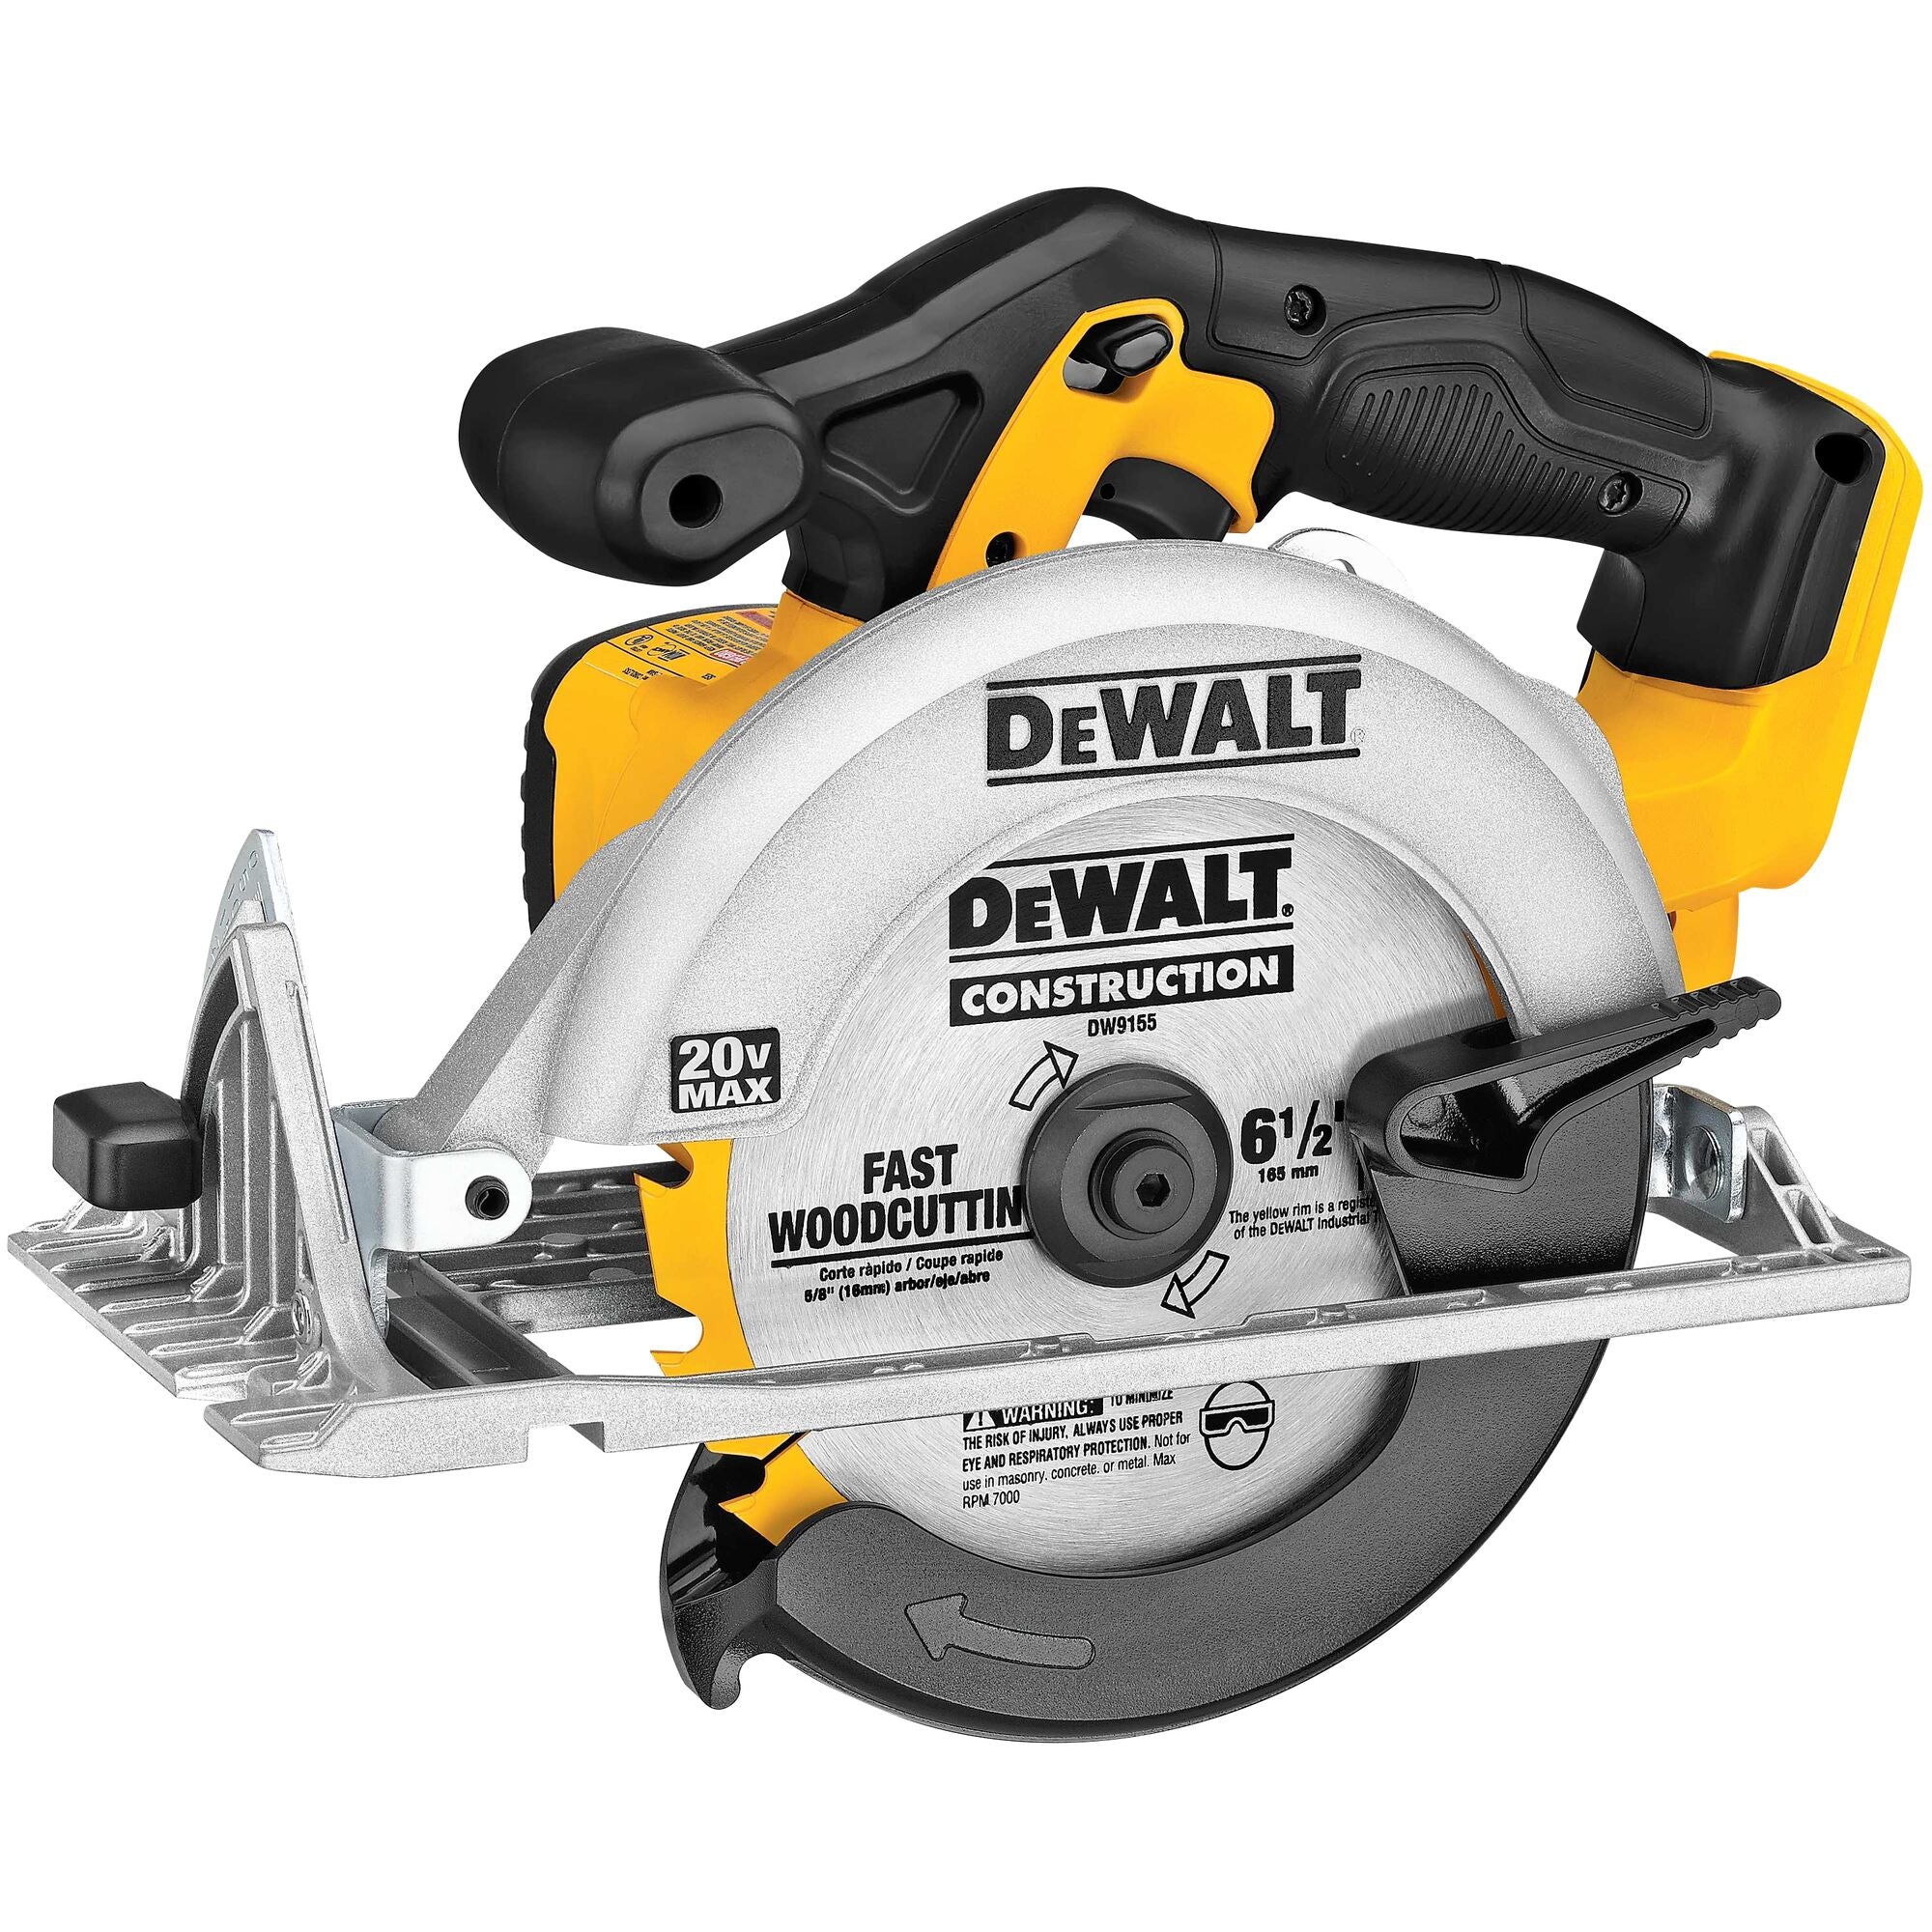 DeWALT DCS391B 20 Volt 6 1/2" Circular Saw Tool Only